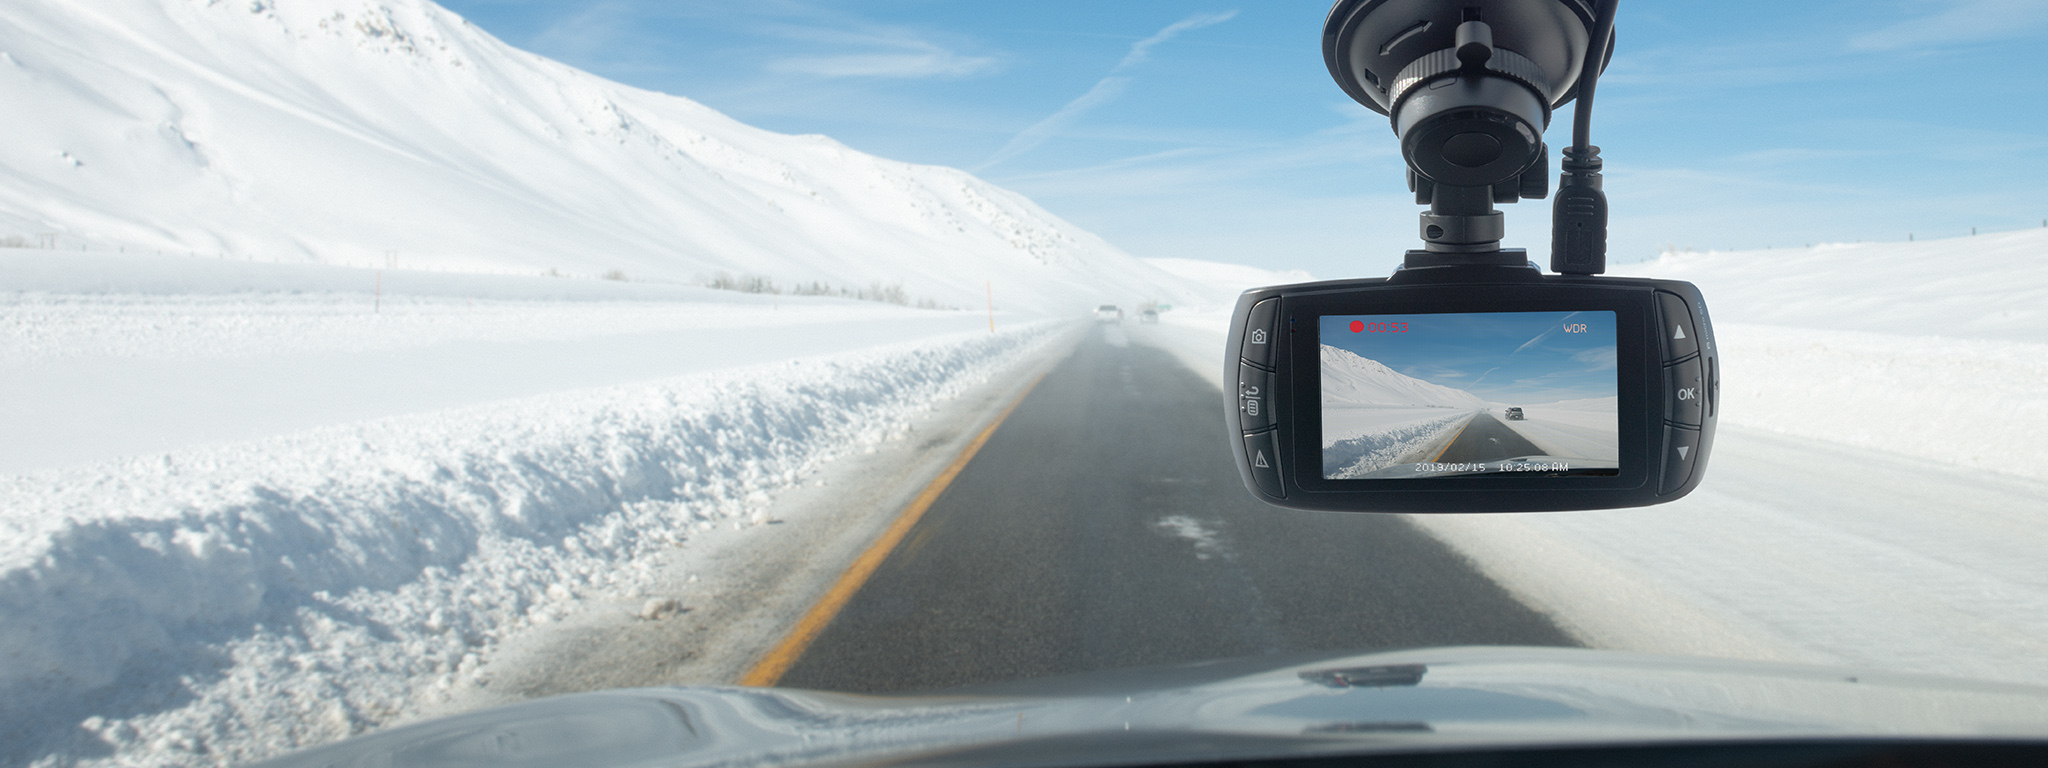 กล้องติดรถยนต์อยู่ด้านหลังของกระจกหน้ารถขณะขับขี่บนถนนโล่งในสภาพแวดล้อมที่มีหิมะปกคลุม